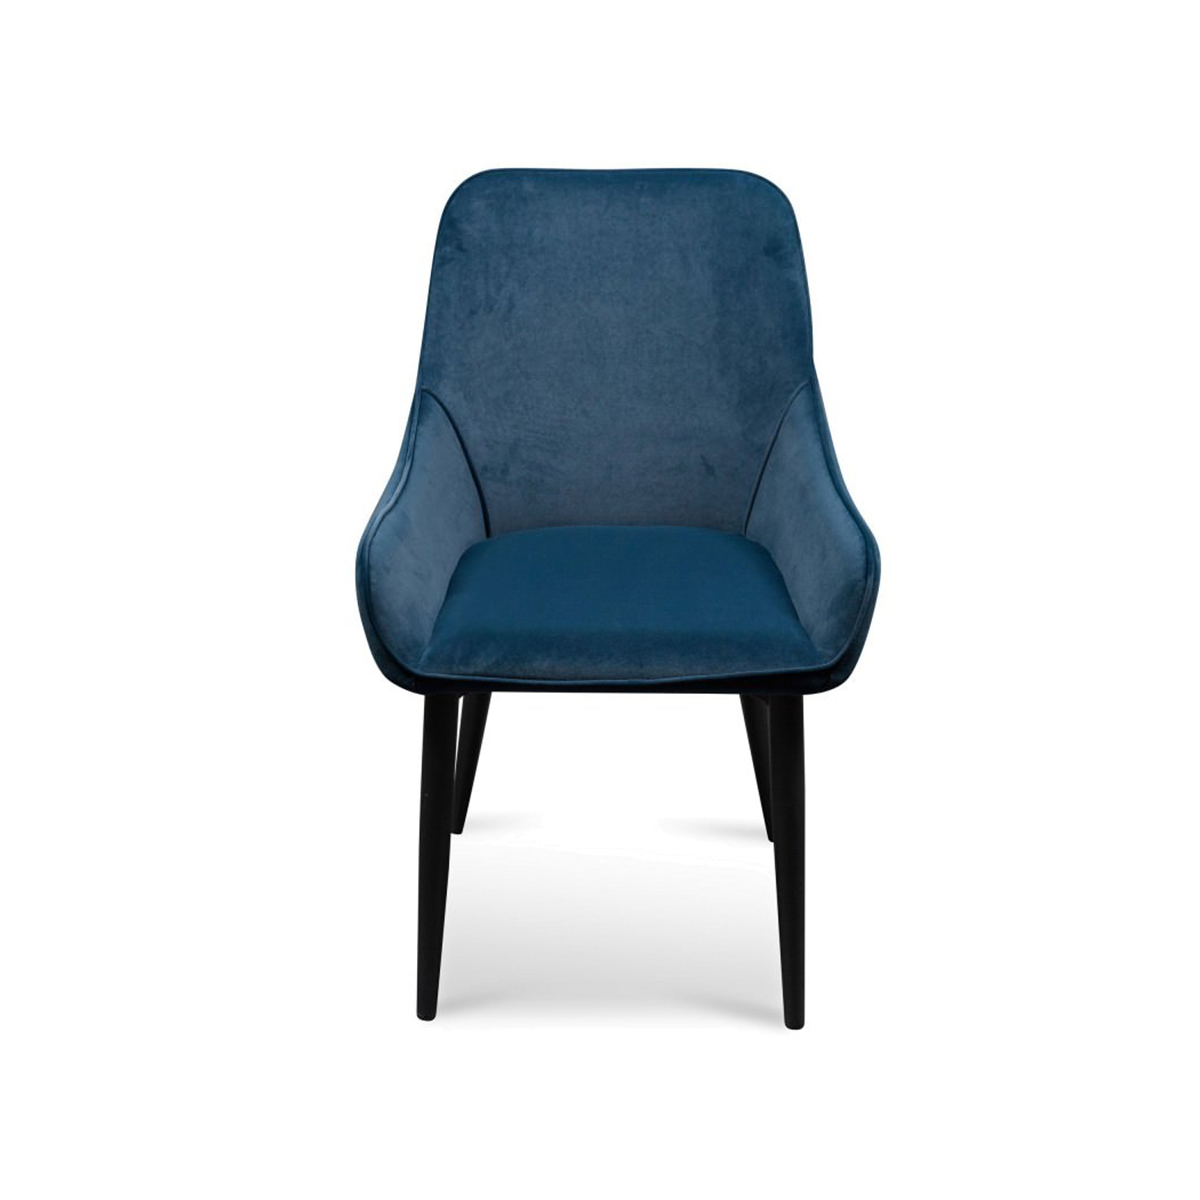 FondHouse Puli Dining Chair - Navy Blue Velvet in Black Legs